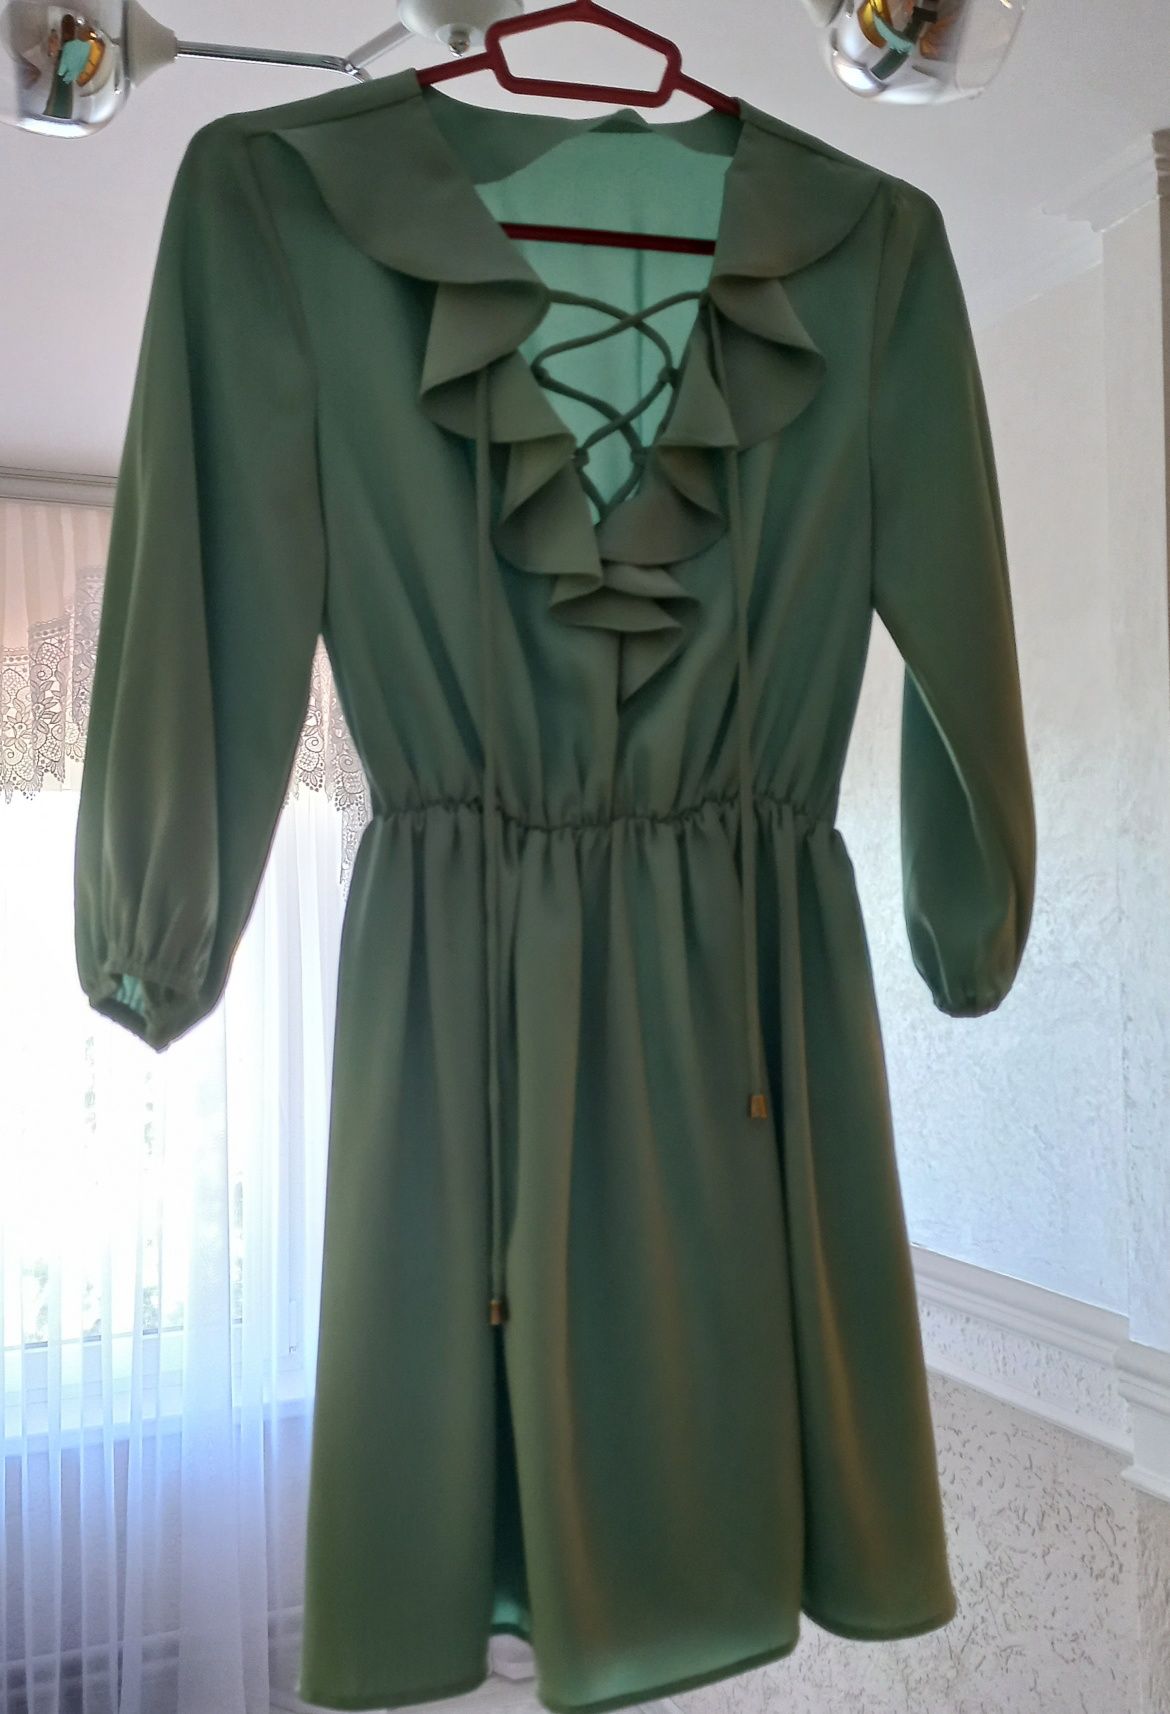 Сукня зеленого кольору,в доброму стані,додаткові фото можу зробити;